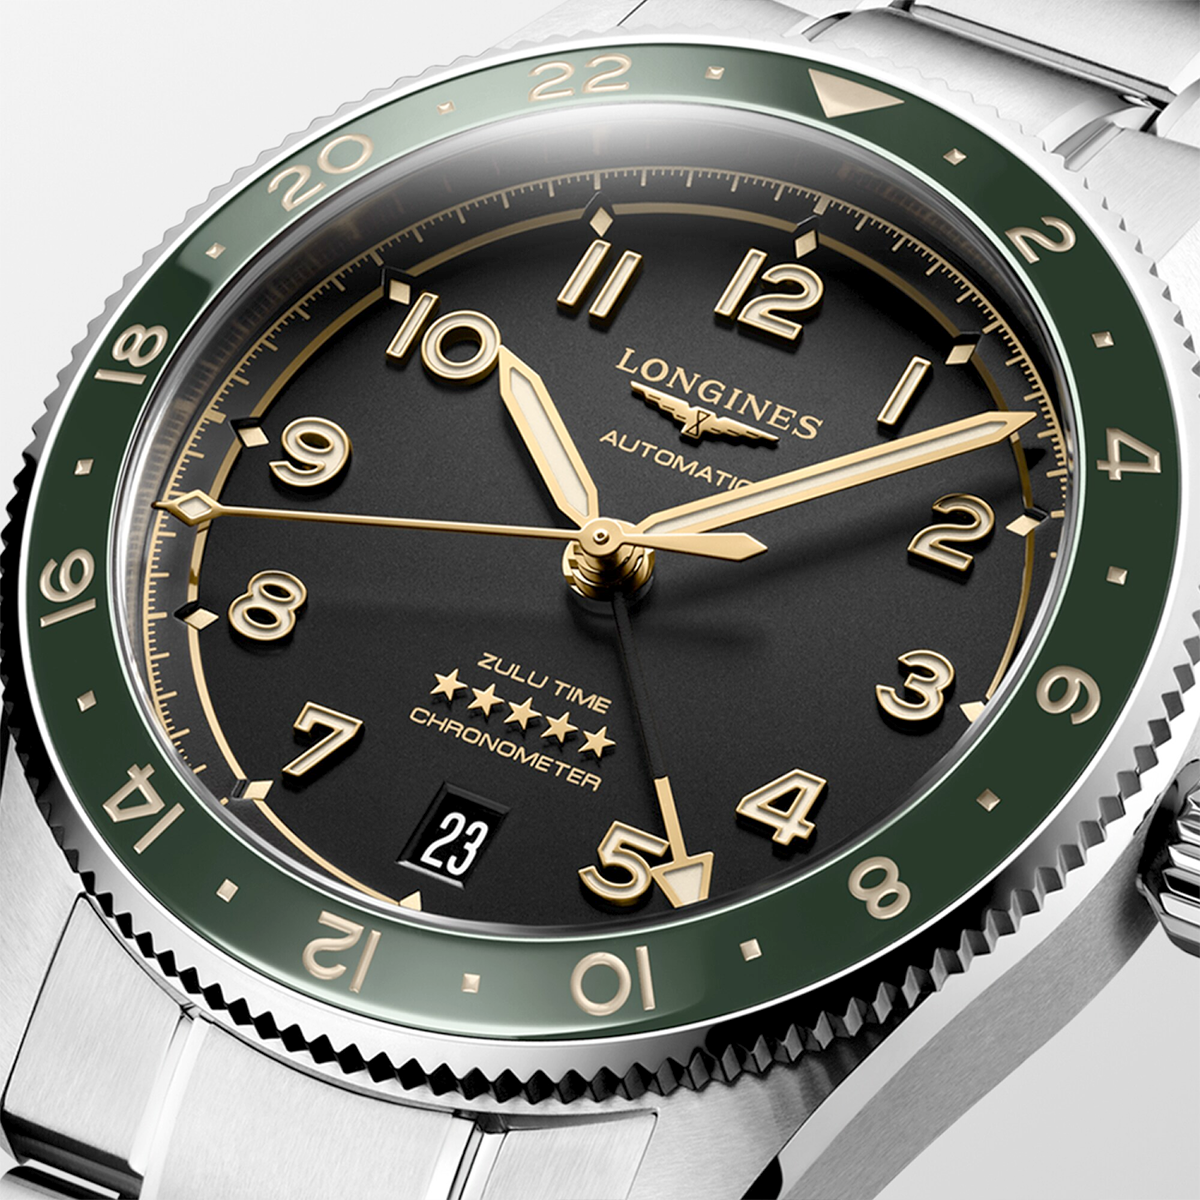 Spirit Zulu Time 39mm Anthracite Dial & Green Bezel Bracelet Watch